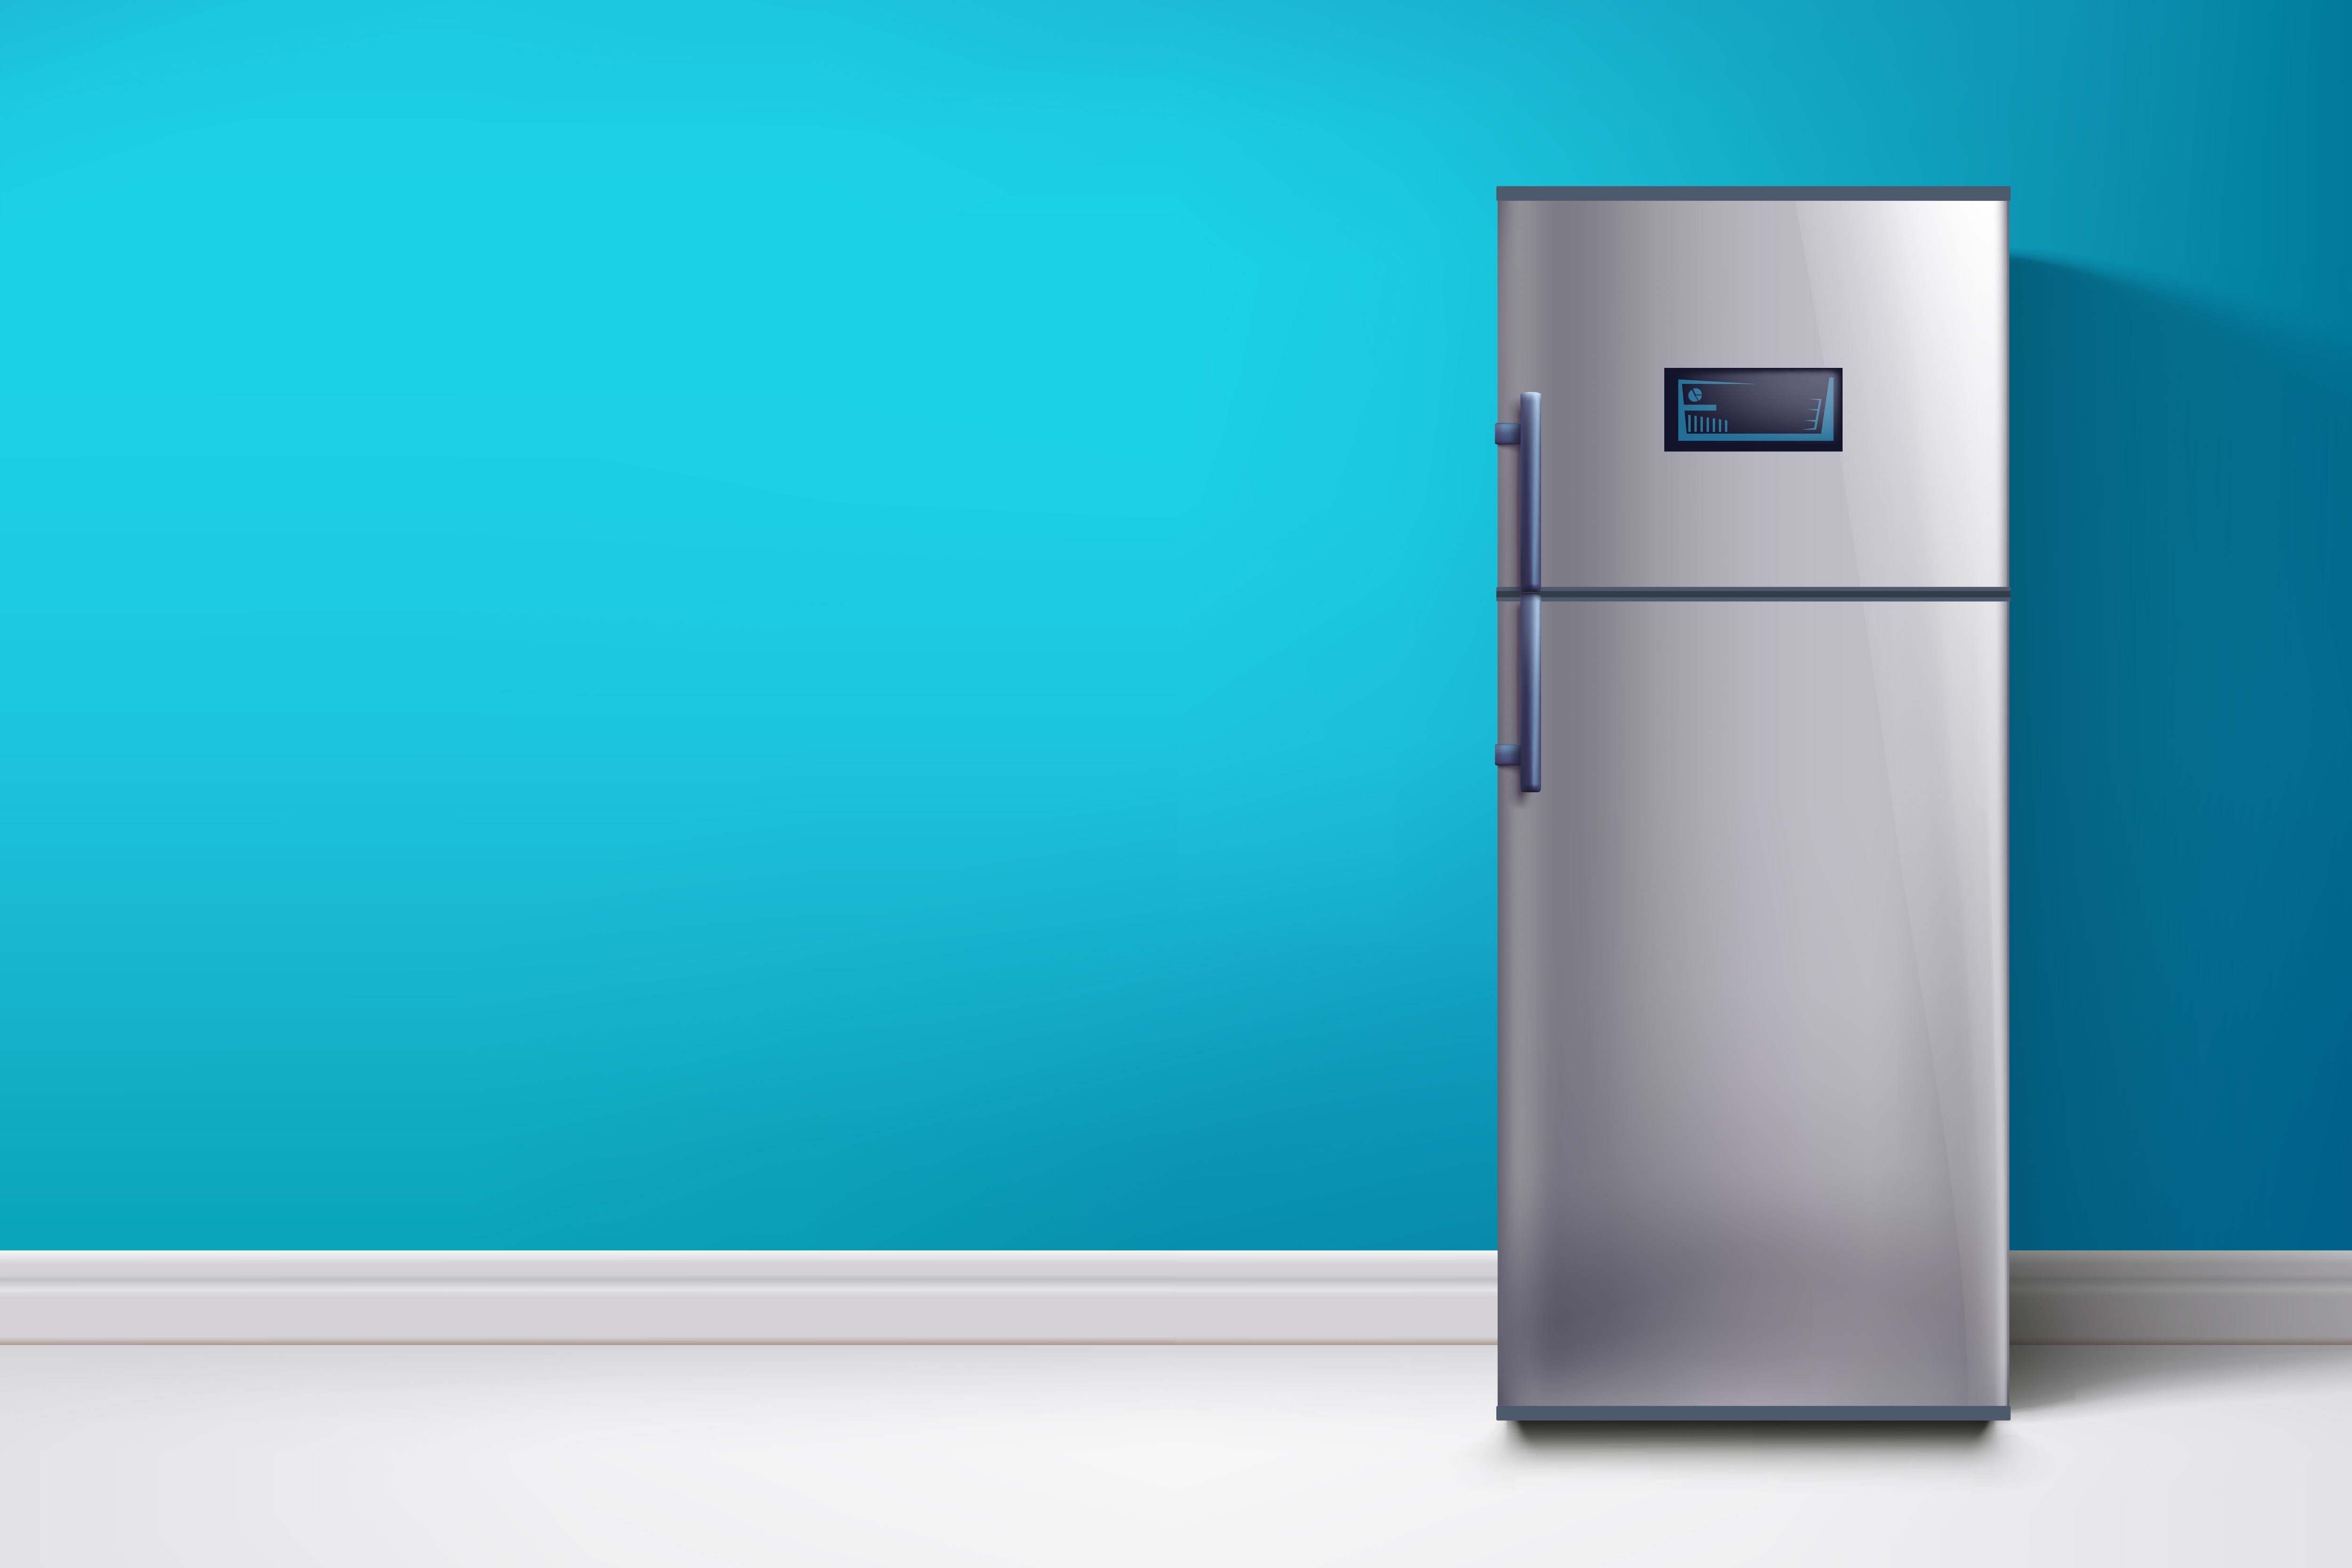 Сток холодильника. Холодильник. Холодильник баннер. Холодильник фон. Холодильник на синем фоне.